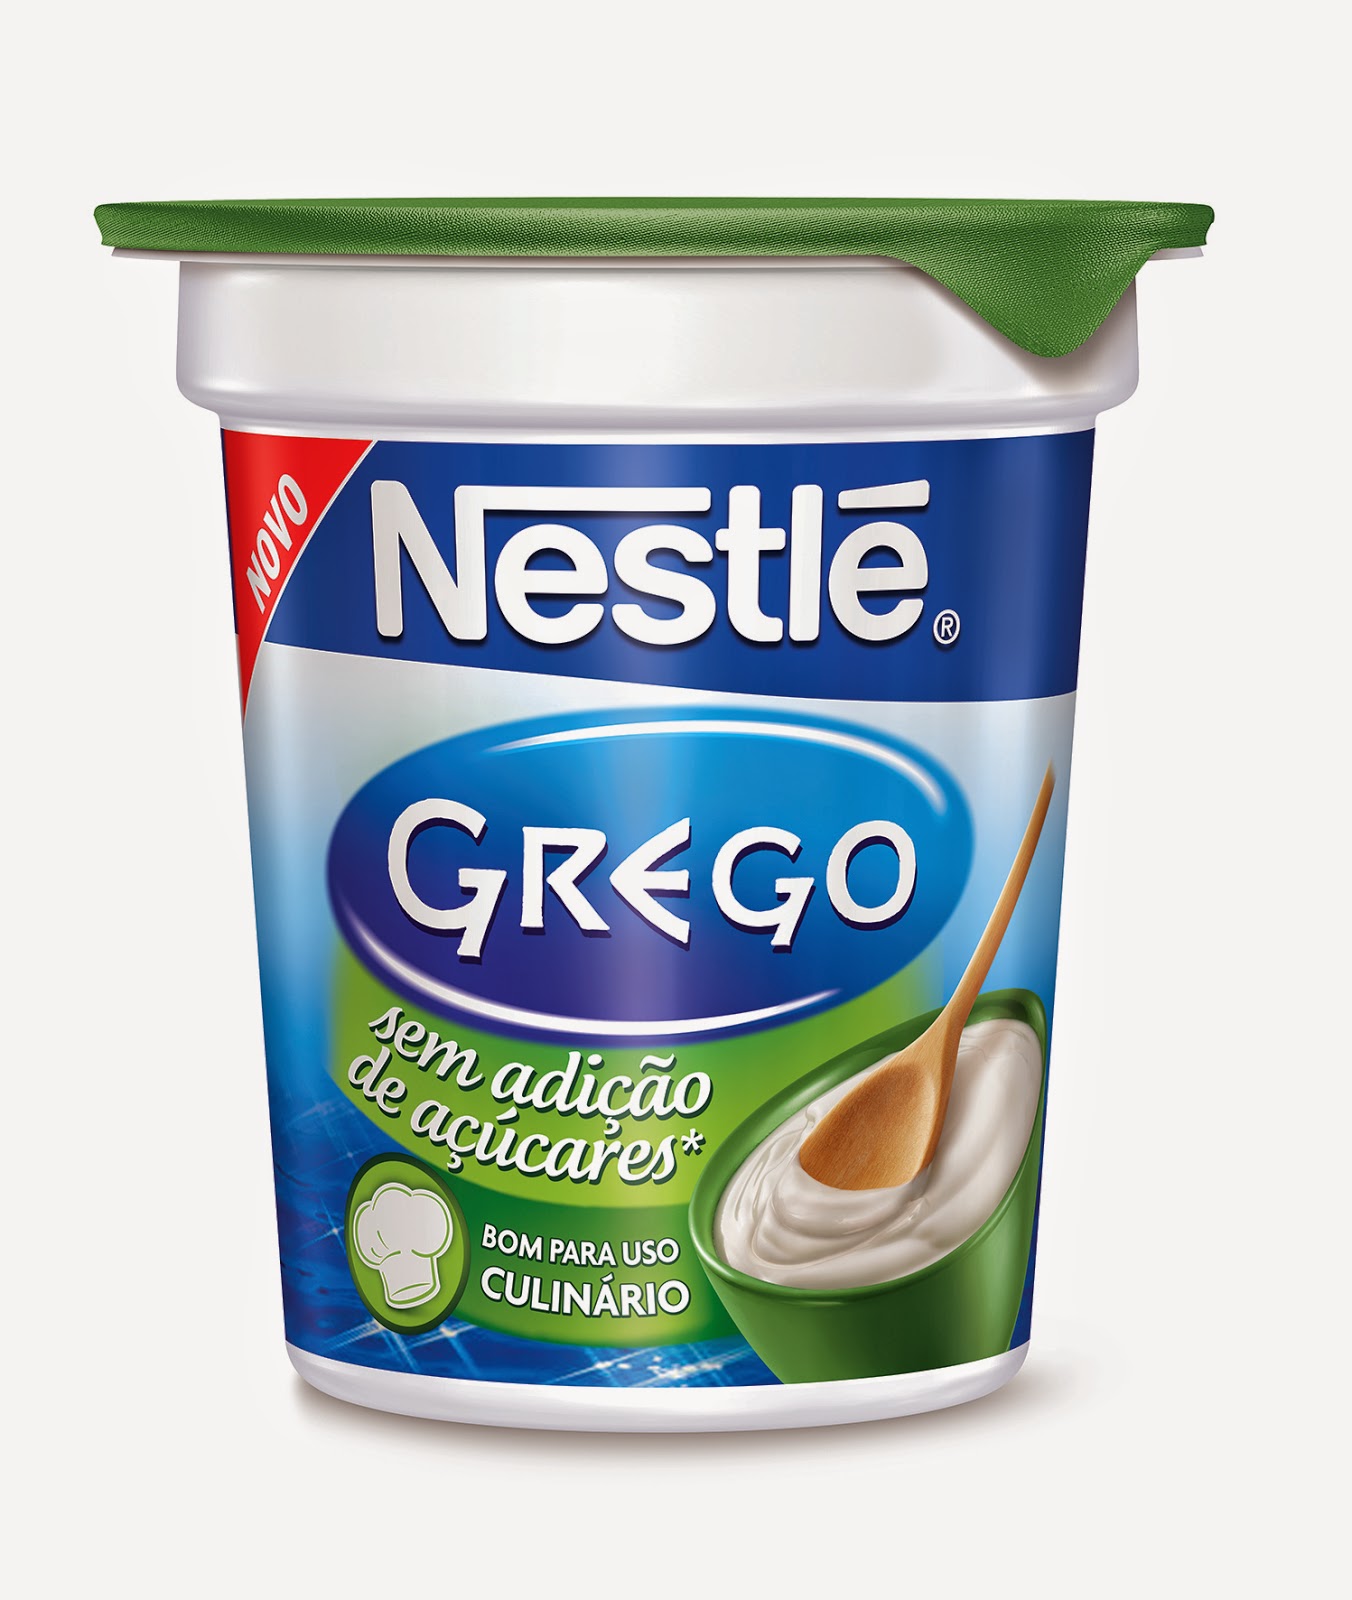 Nestlé Grego Culinário